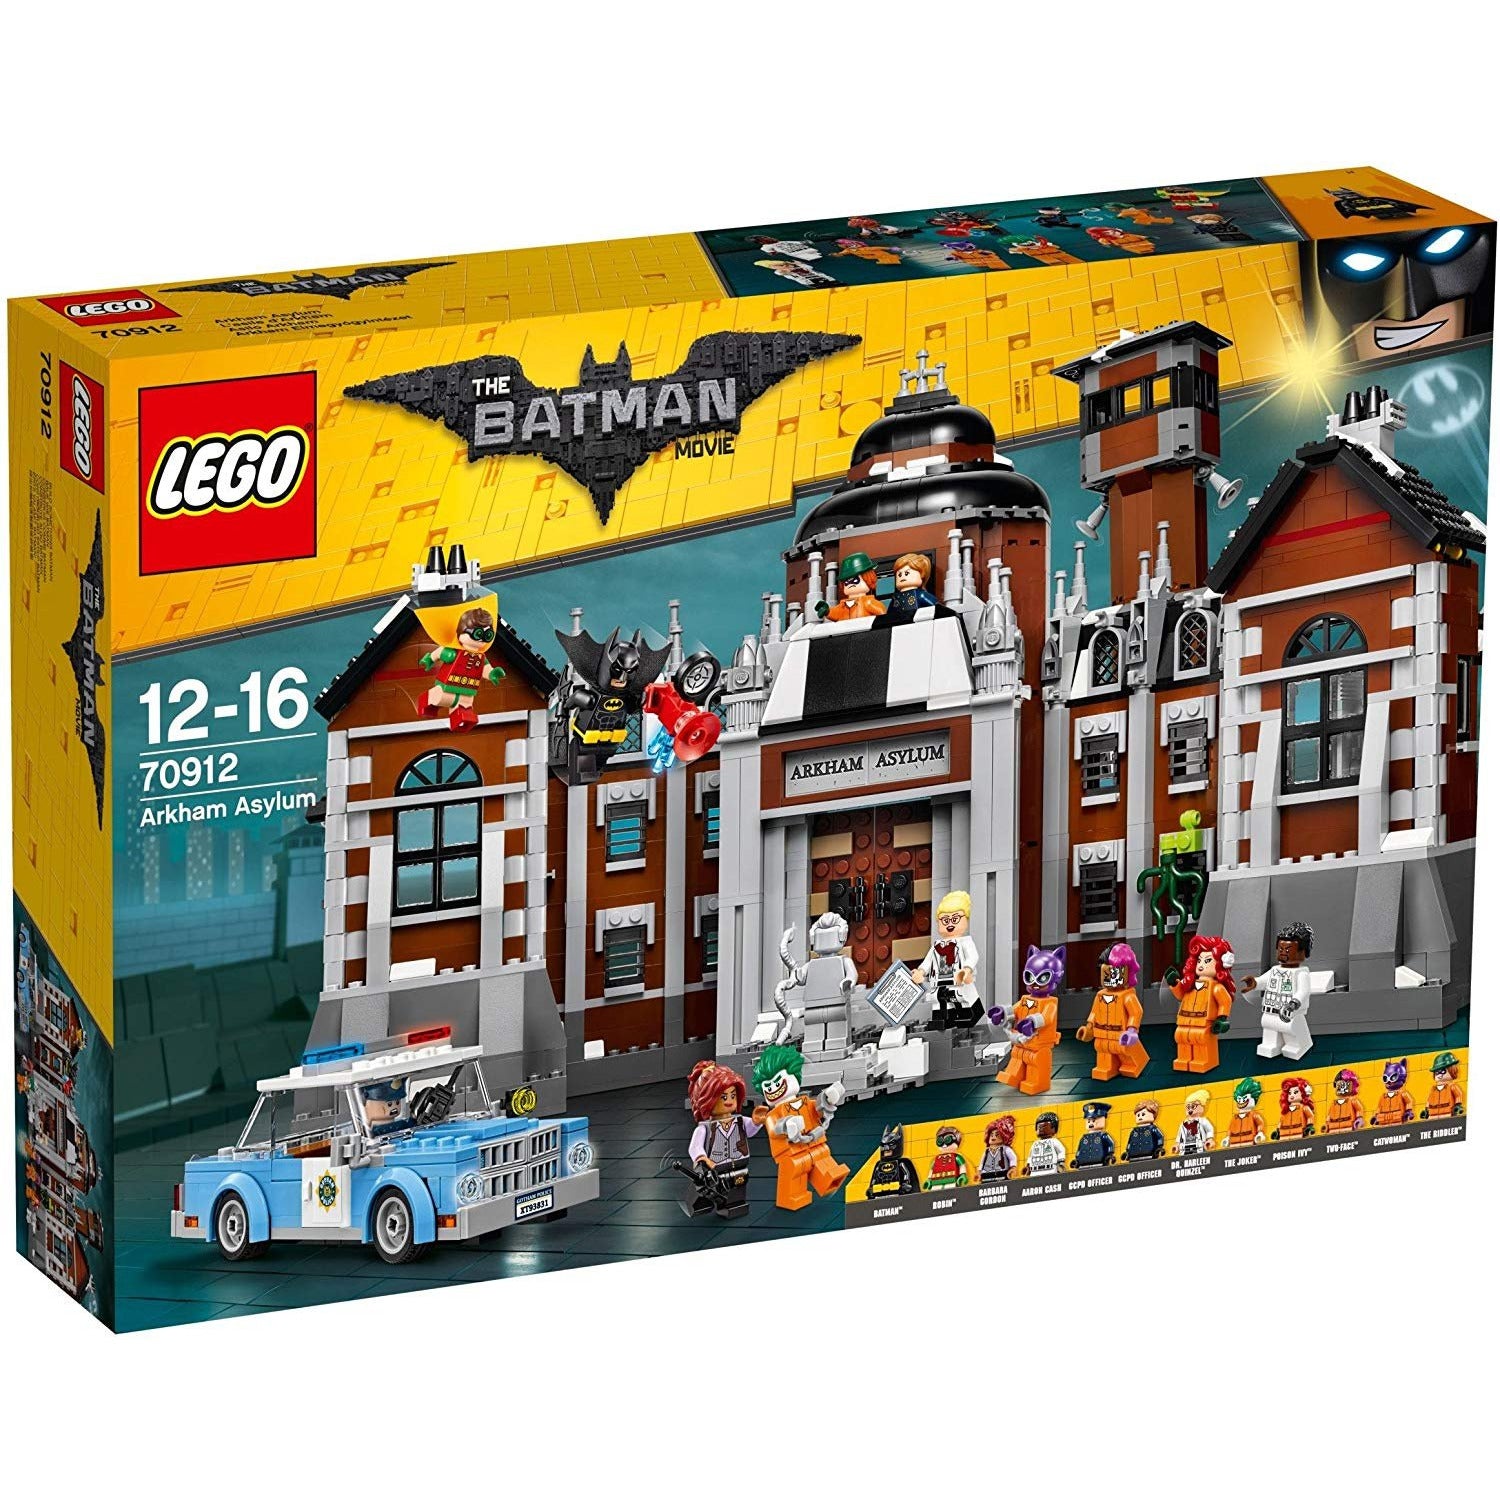 The Lego Batman Movie: Arkham Asylum 70912